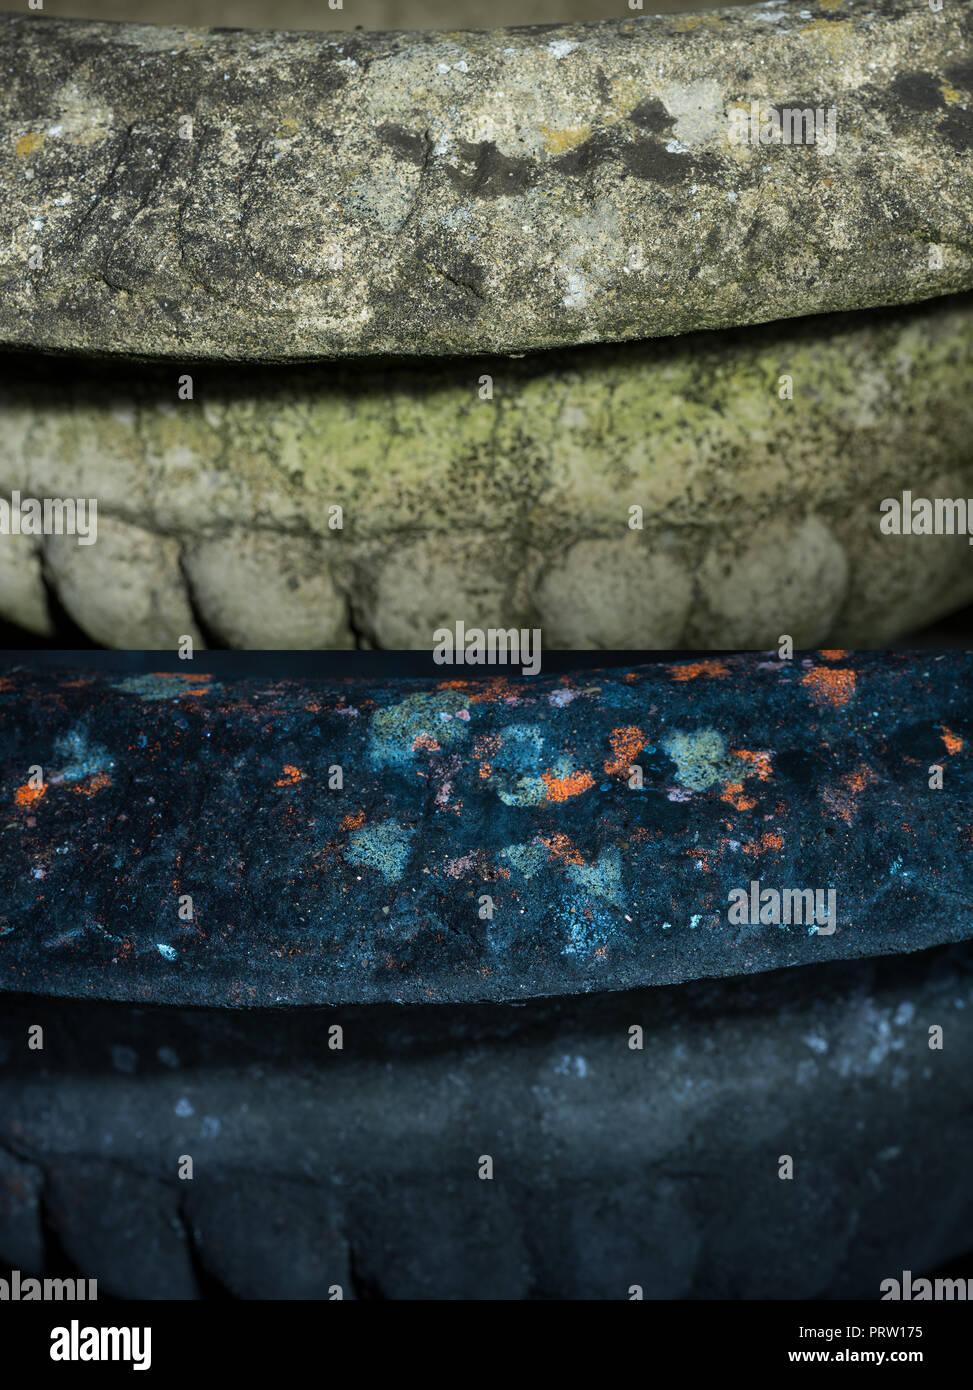 Jardin de la surface de l'urne en pierre voir en plein jour et seulement éclairé par la lumière UV 365 nm causant des lichens et des algues d'une fluorescence dans les modèles invisibles Banque D'Images